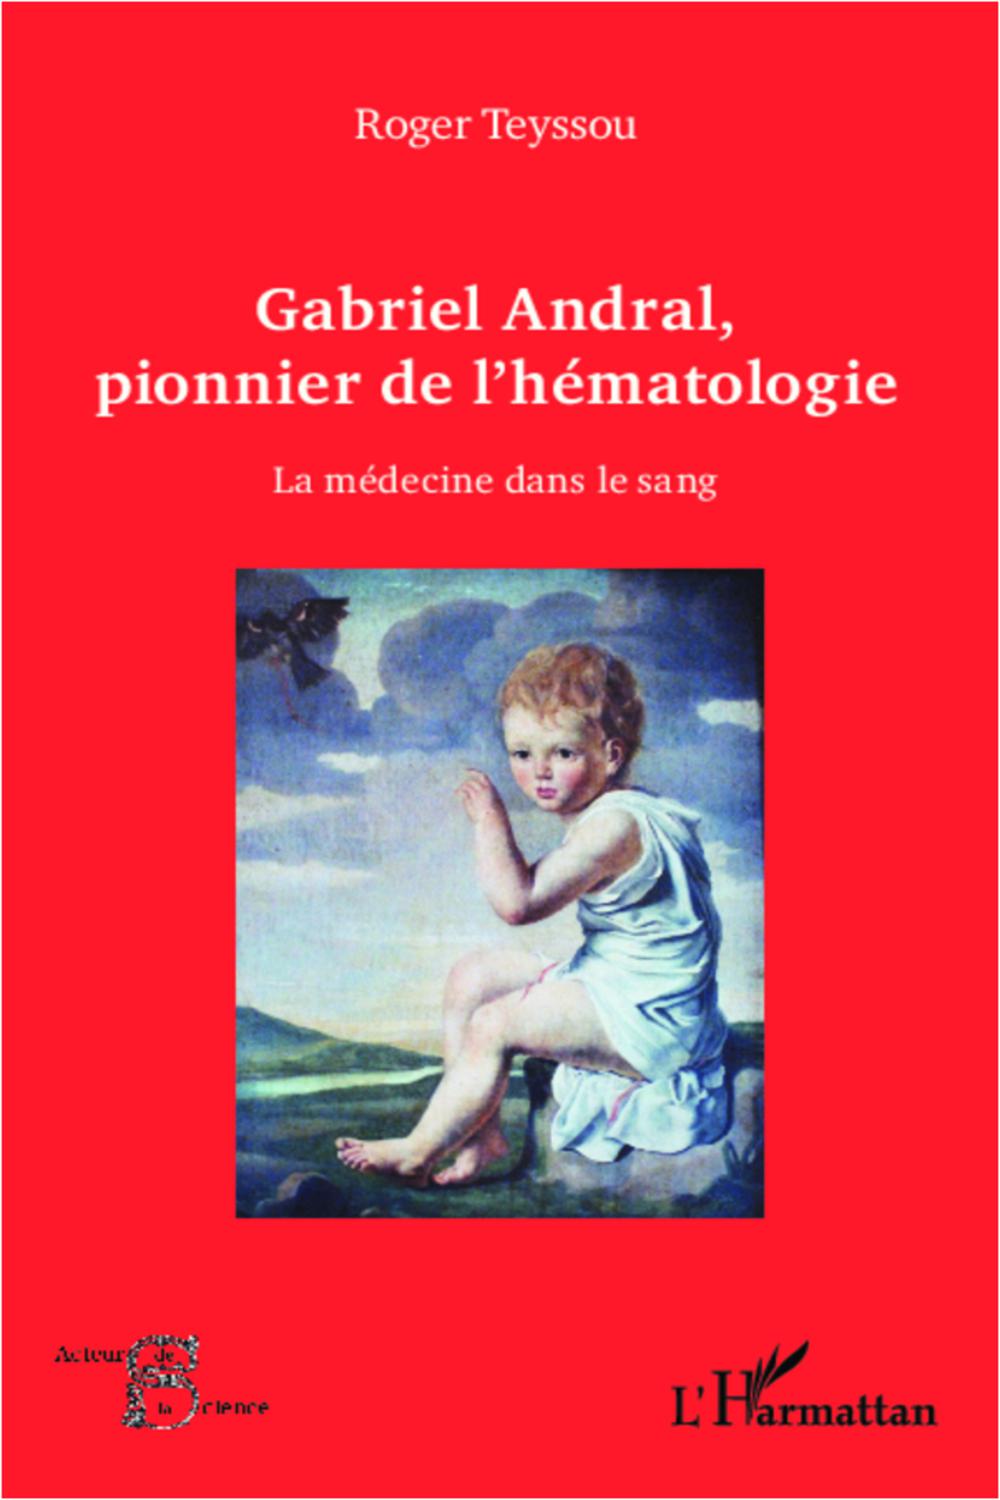 Gabriel Andral, pionnier de l'hématologie - Roger Teyssou